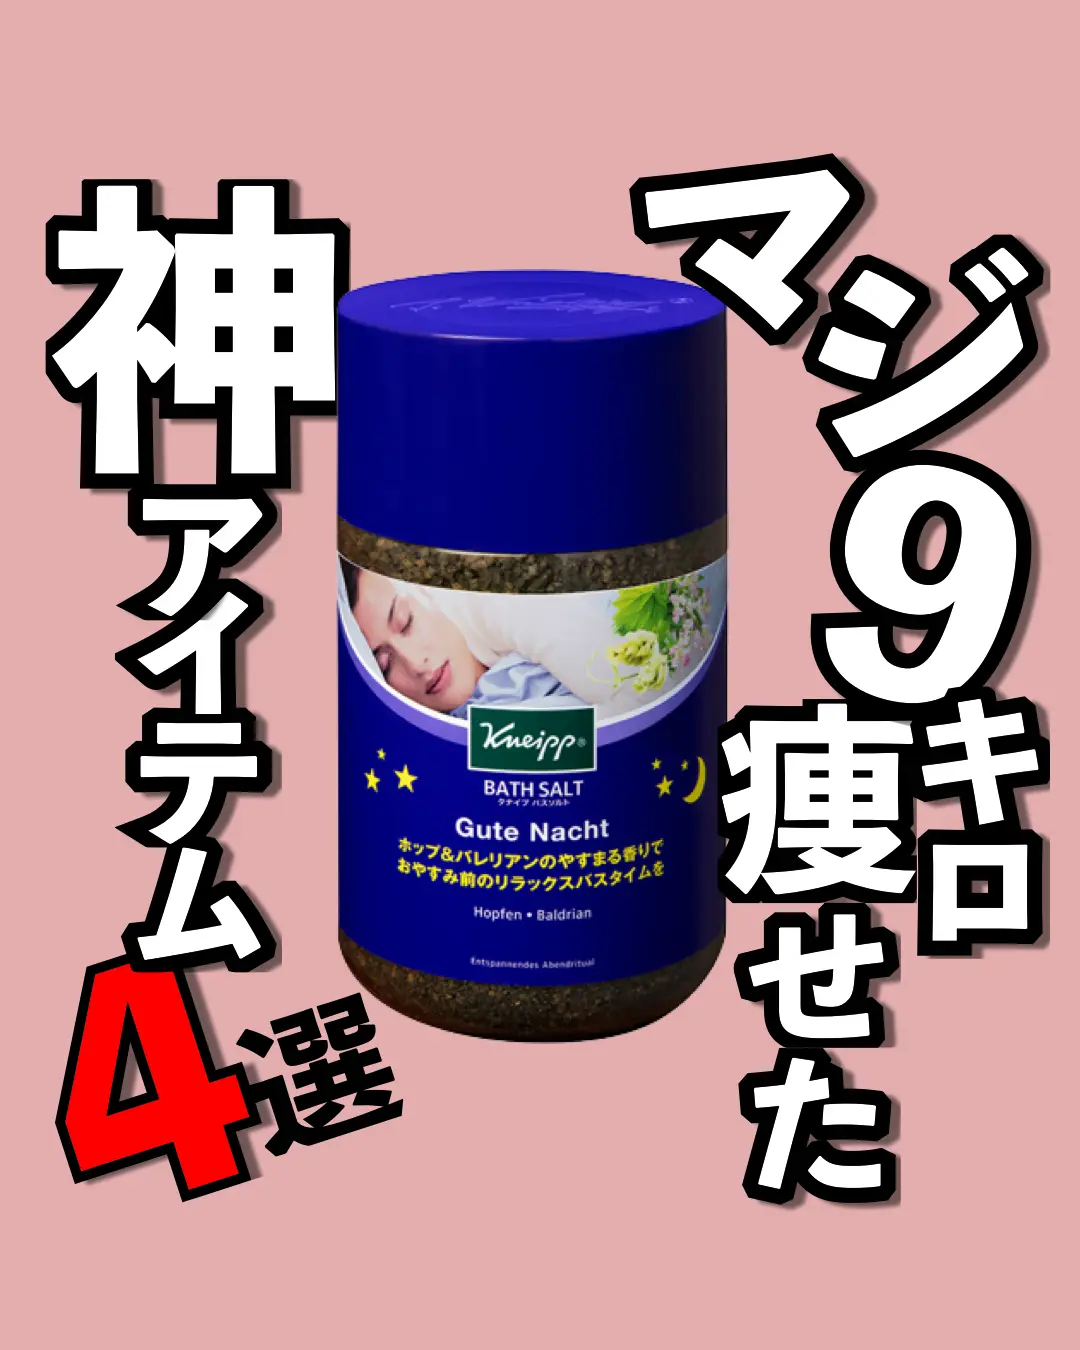 Toki Slimming Candy Price in Japan - Lemon8検索